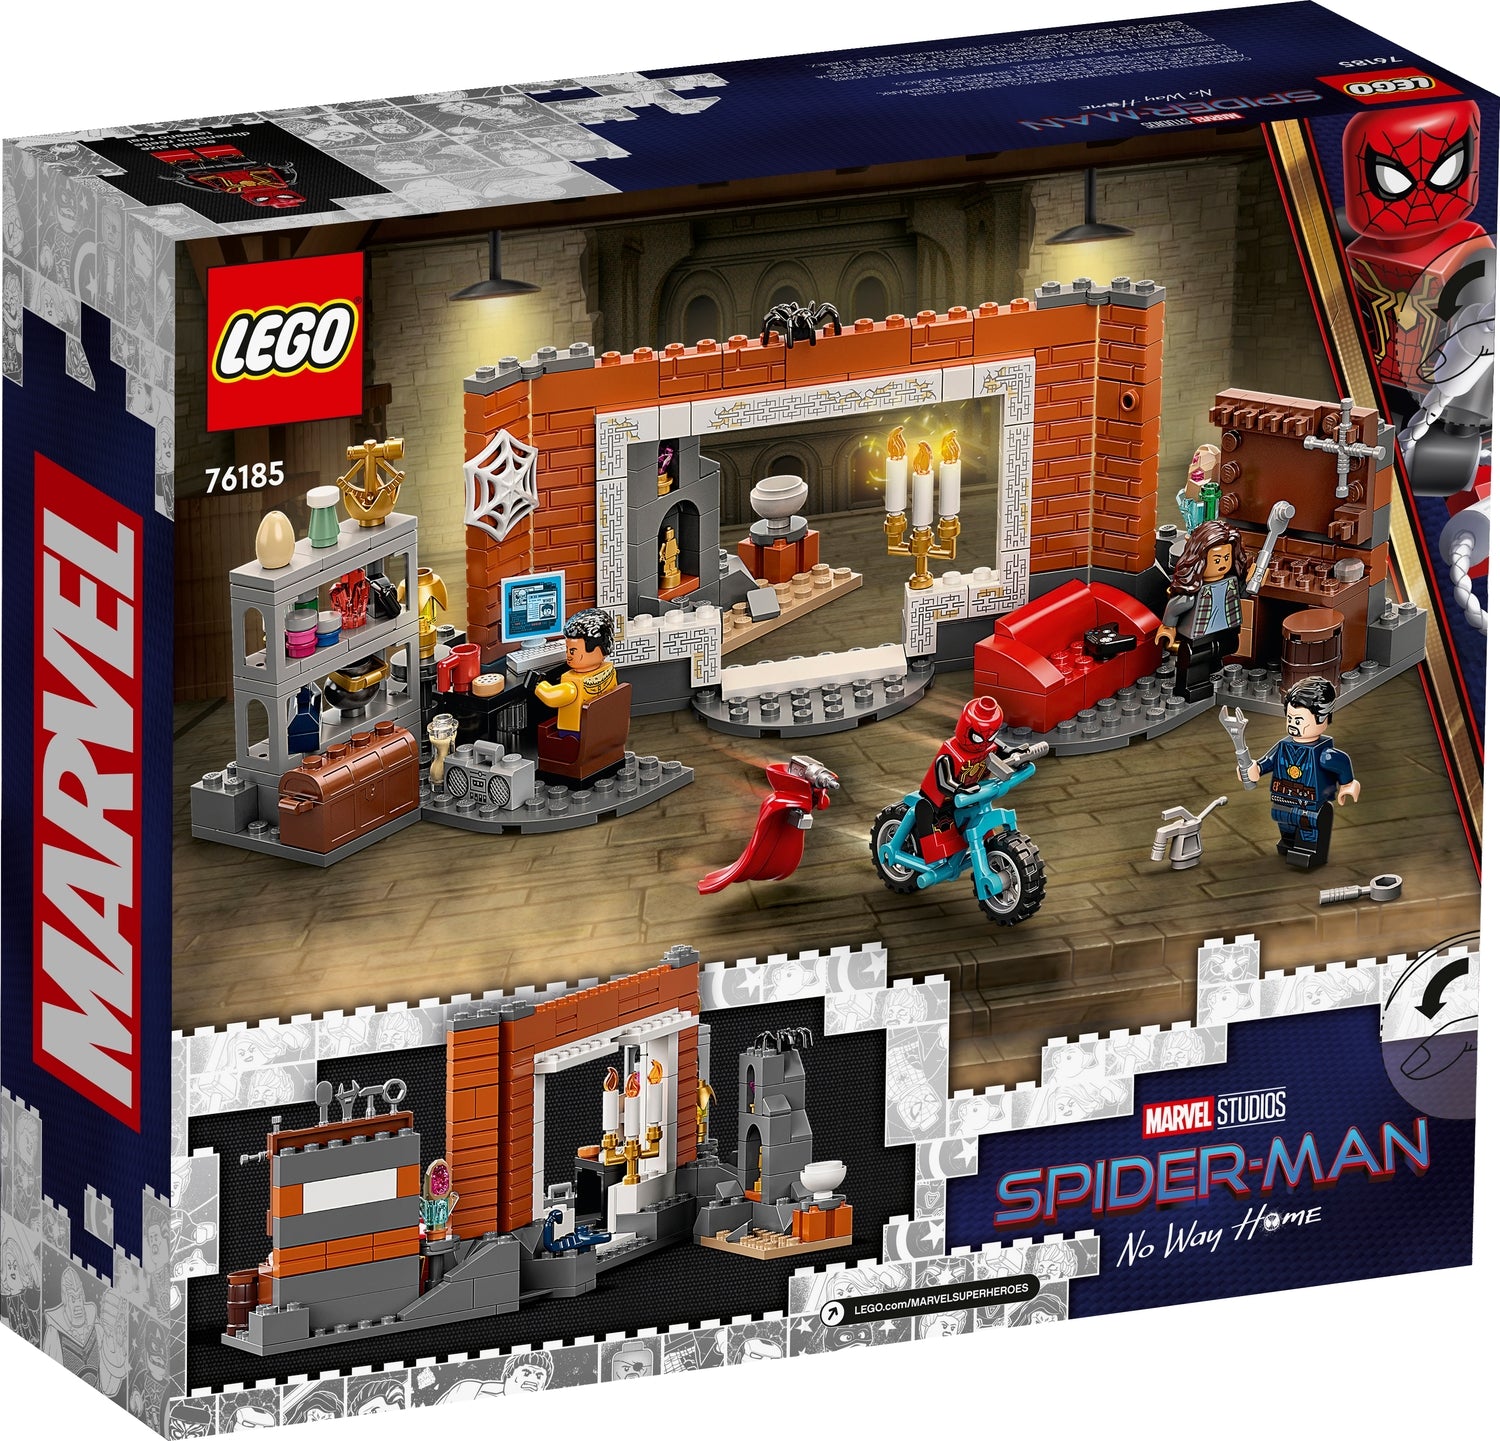 LEGO Spider-Man: Spider-Man at the Sanctum Workshop